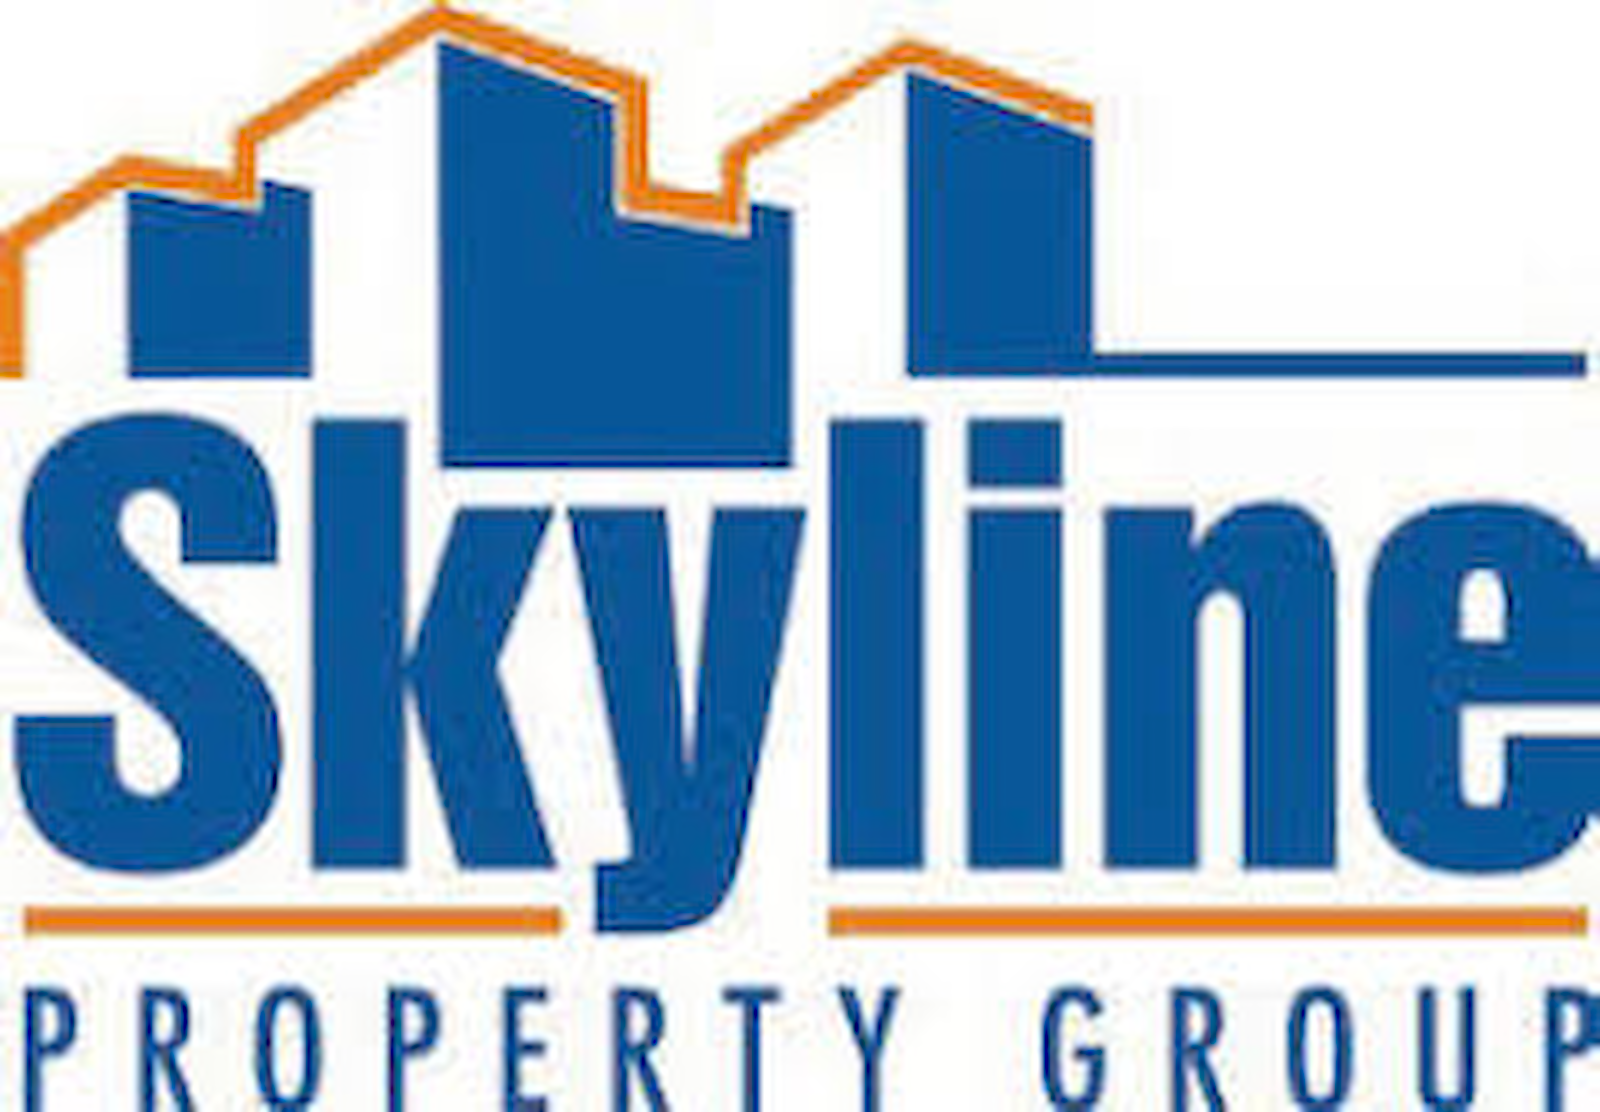 Skyline Property Group